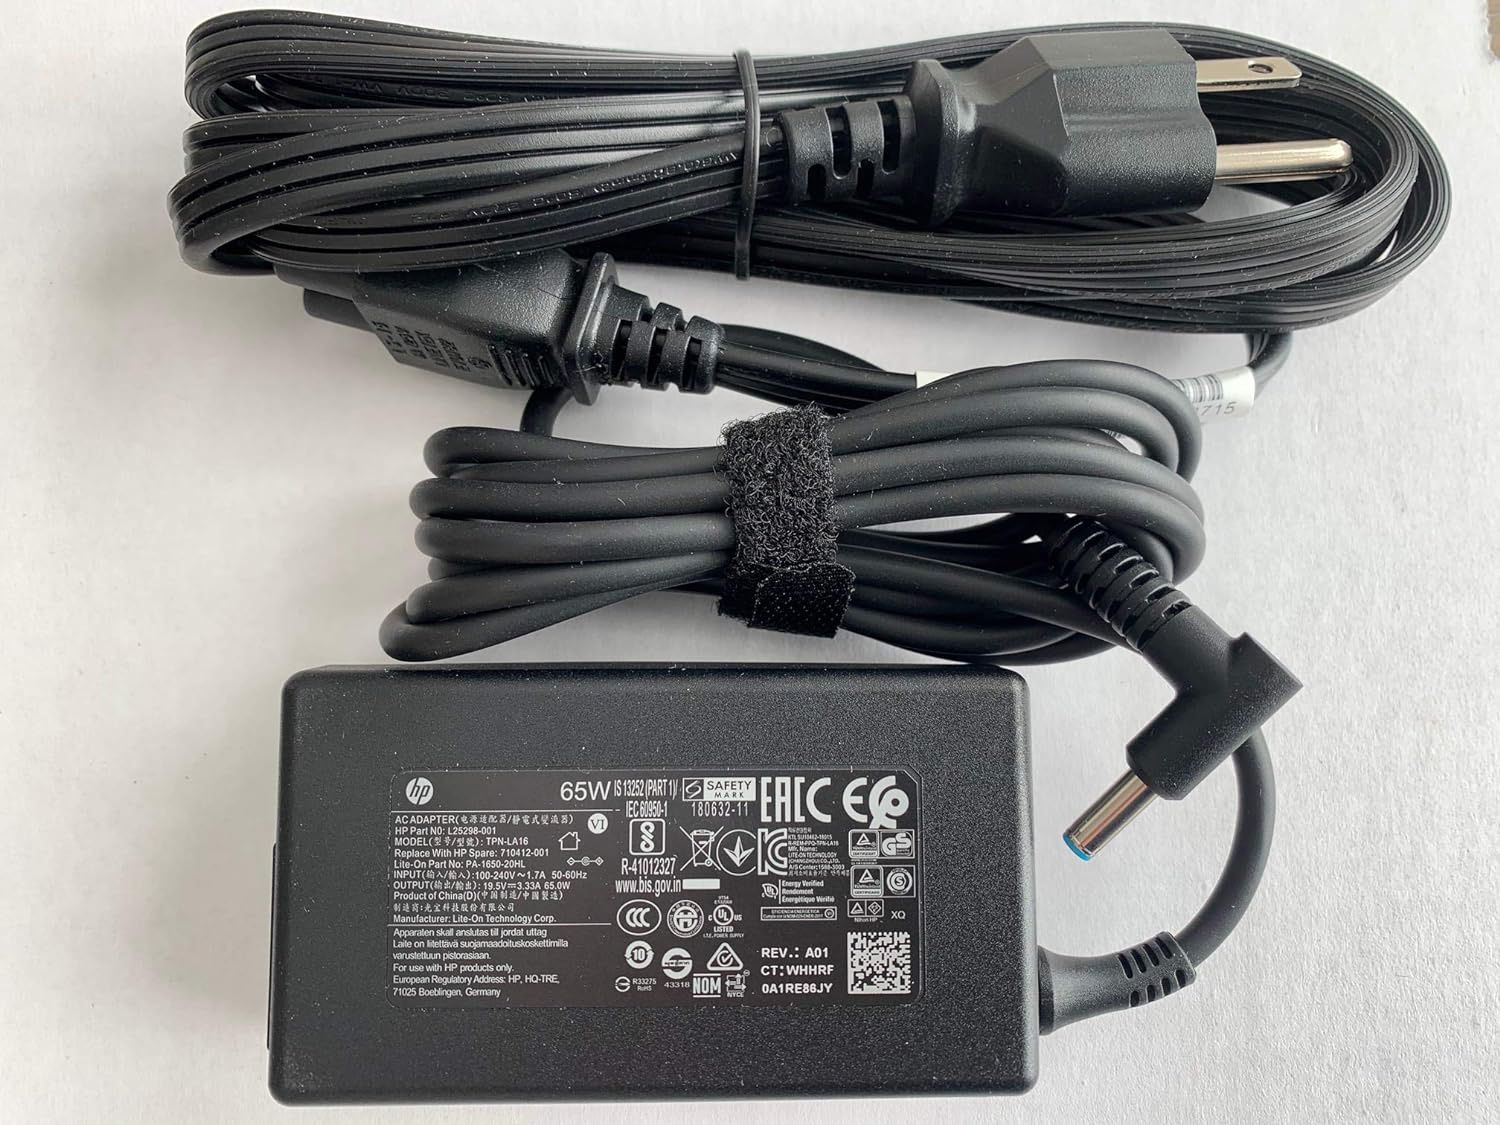 65W Blue tip AC Adapter for HP ELITEBOOK 840 G3 (V1H24UT, T6F46UT),HP 15-BS289WM, Compatible with P/N: 710412-001, PA-1650-20HL, TPN-LA16, L25298-001,